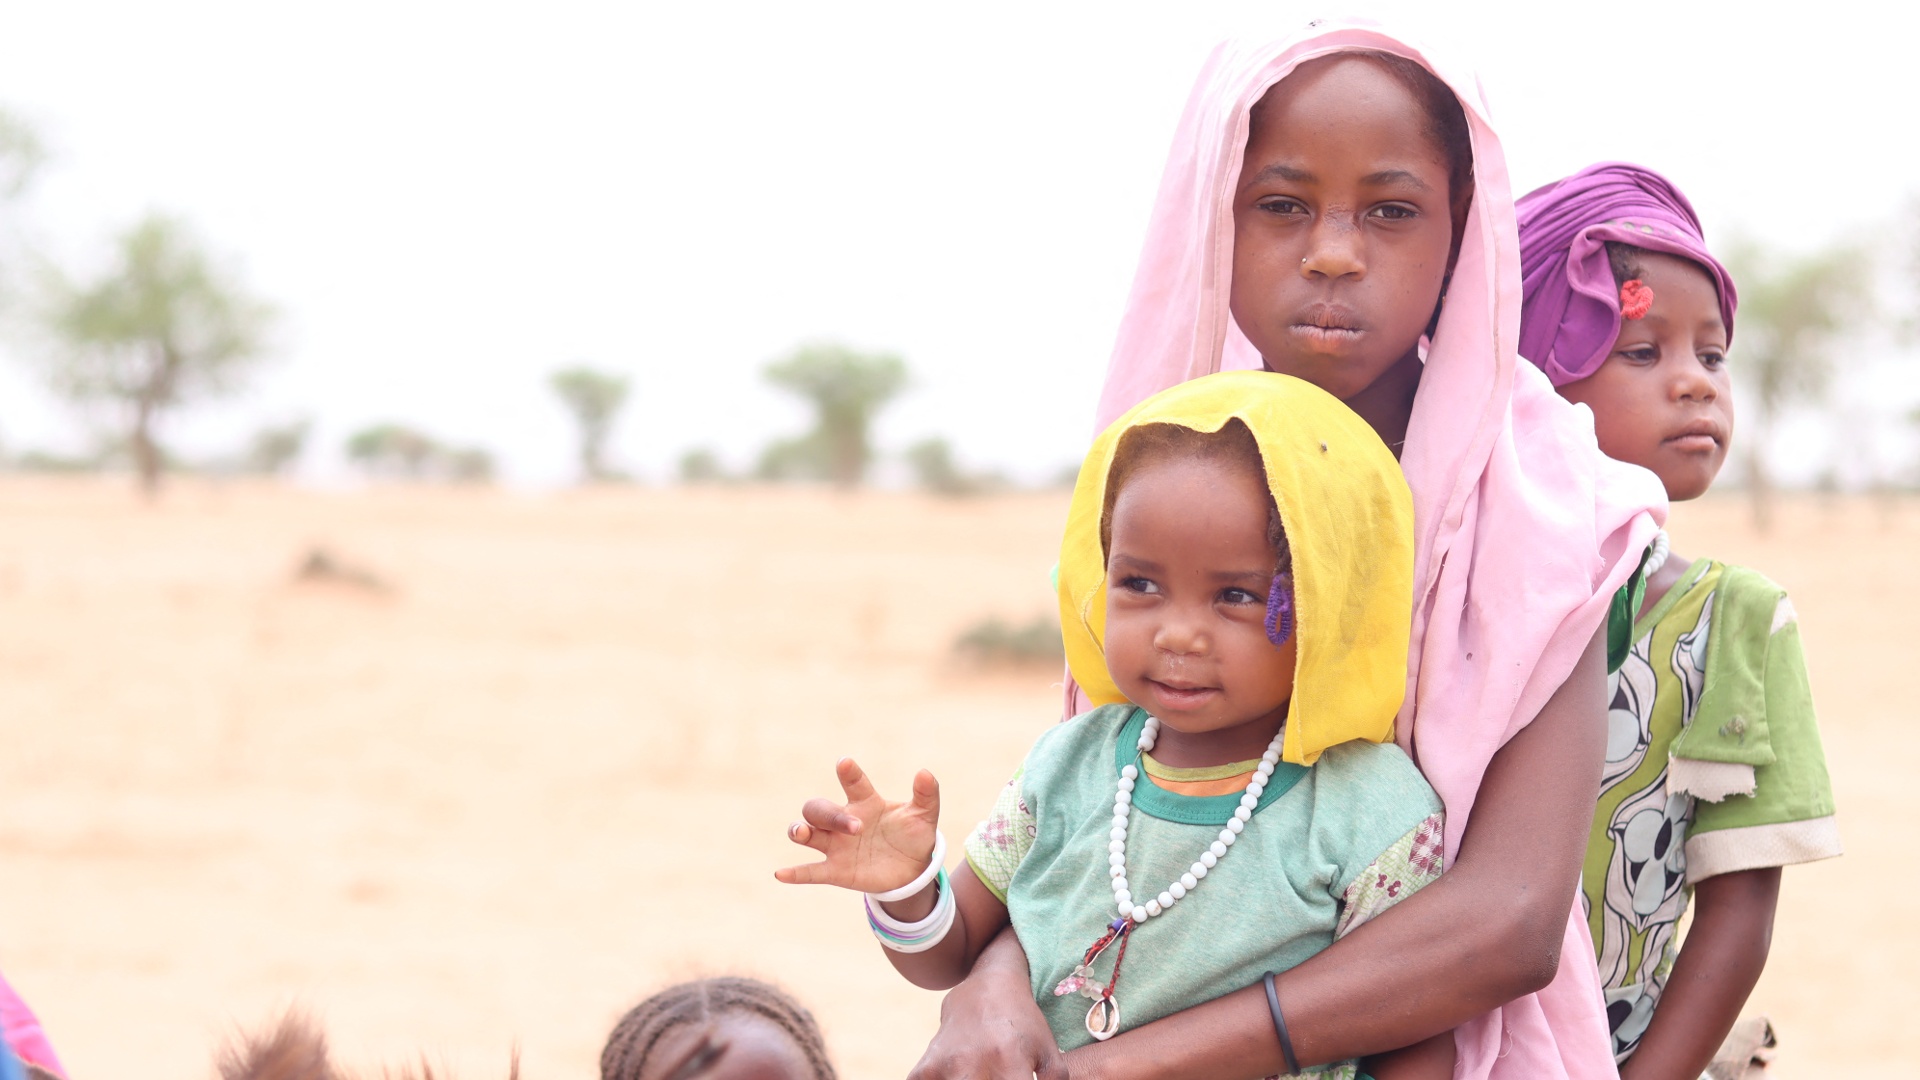 ООН предупреждает, что от конфликта в Судане может бежать до 800 тыс. человек